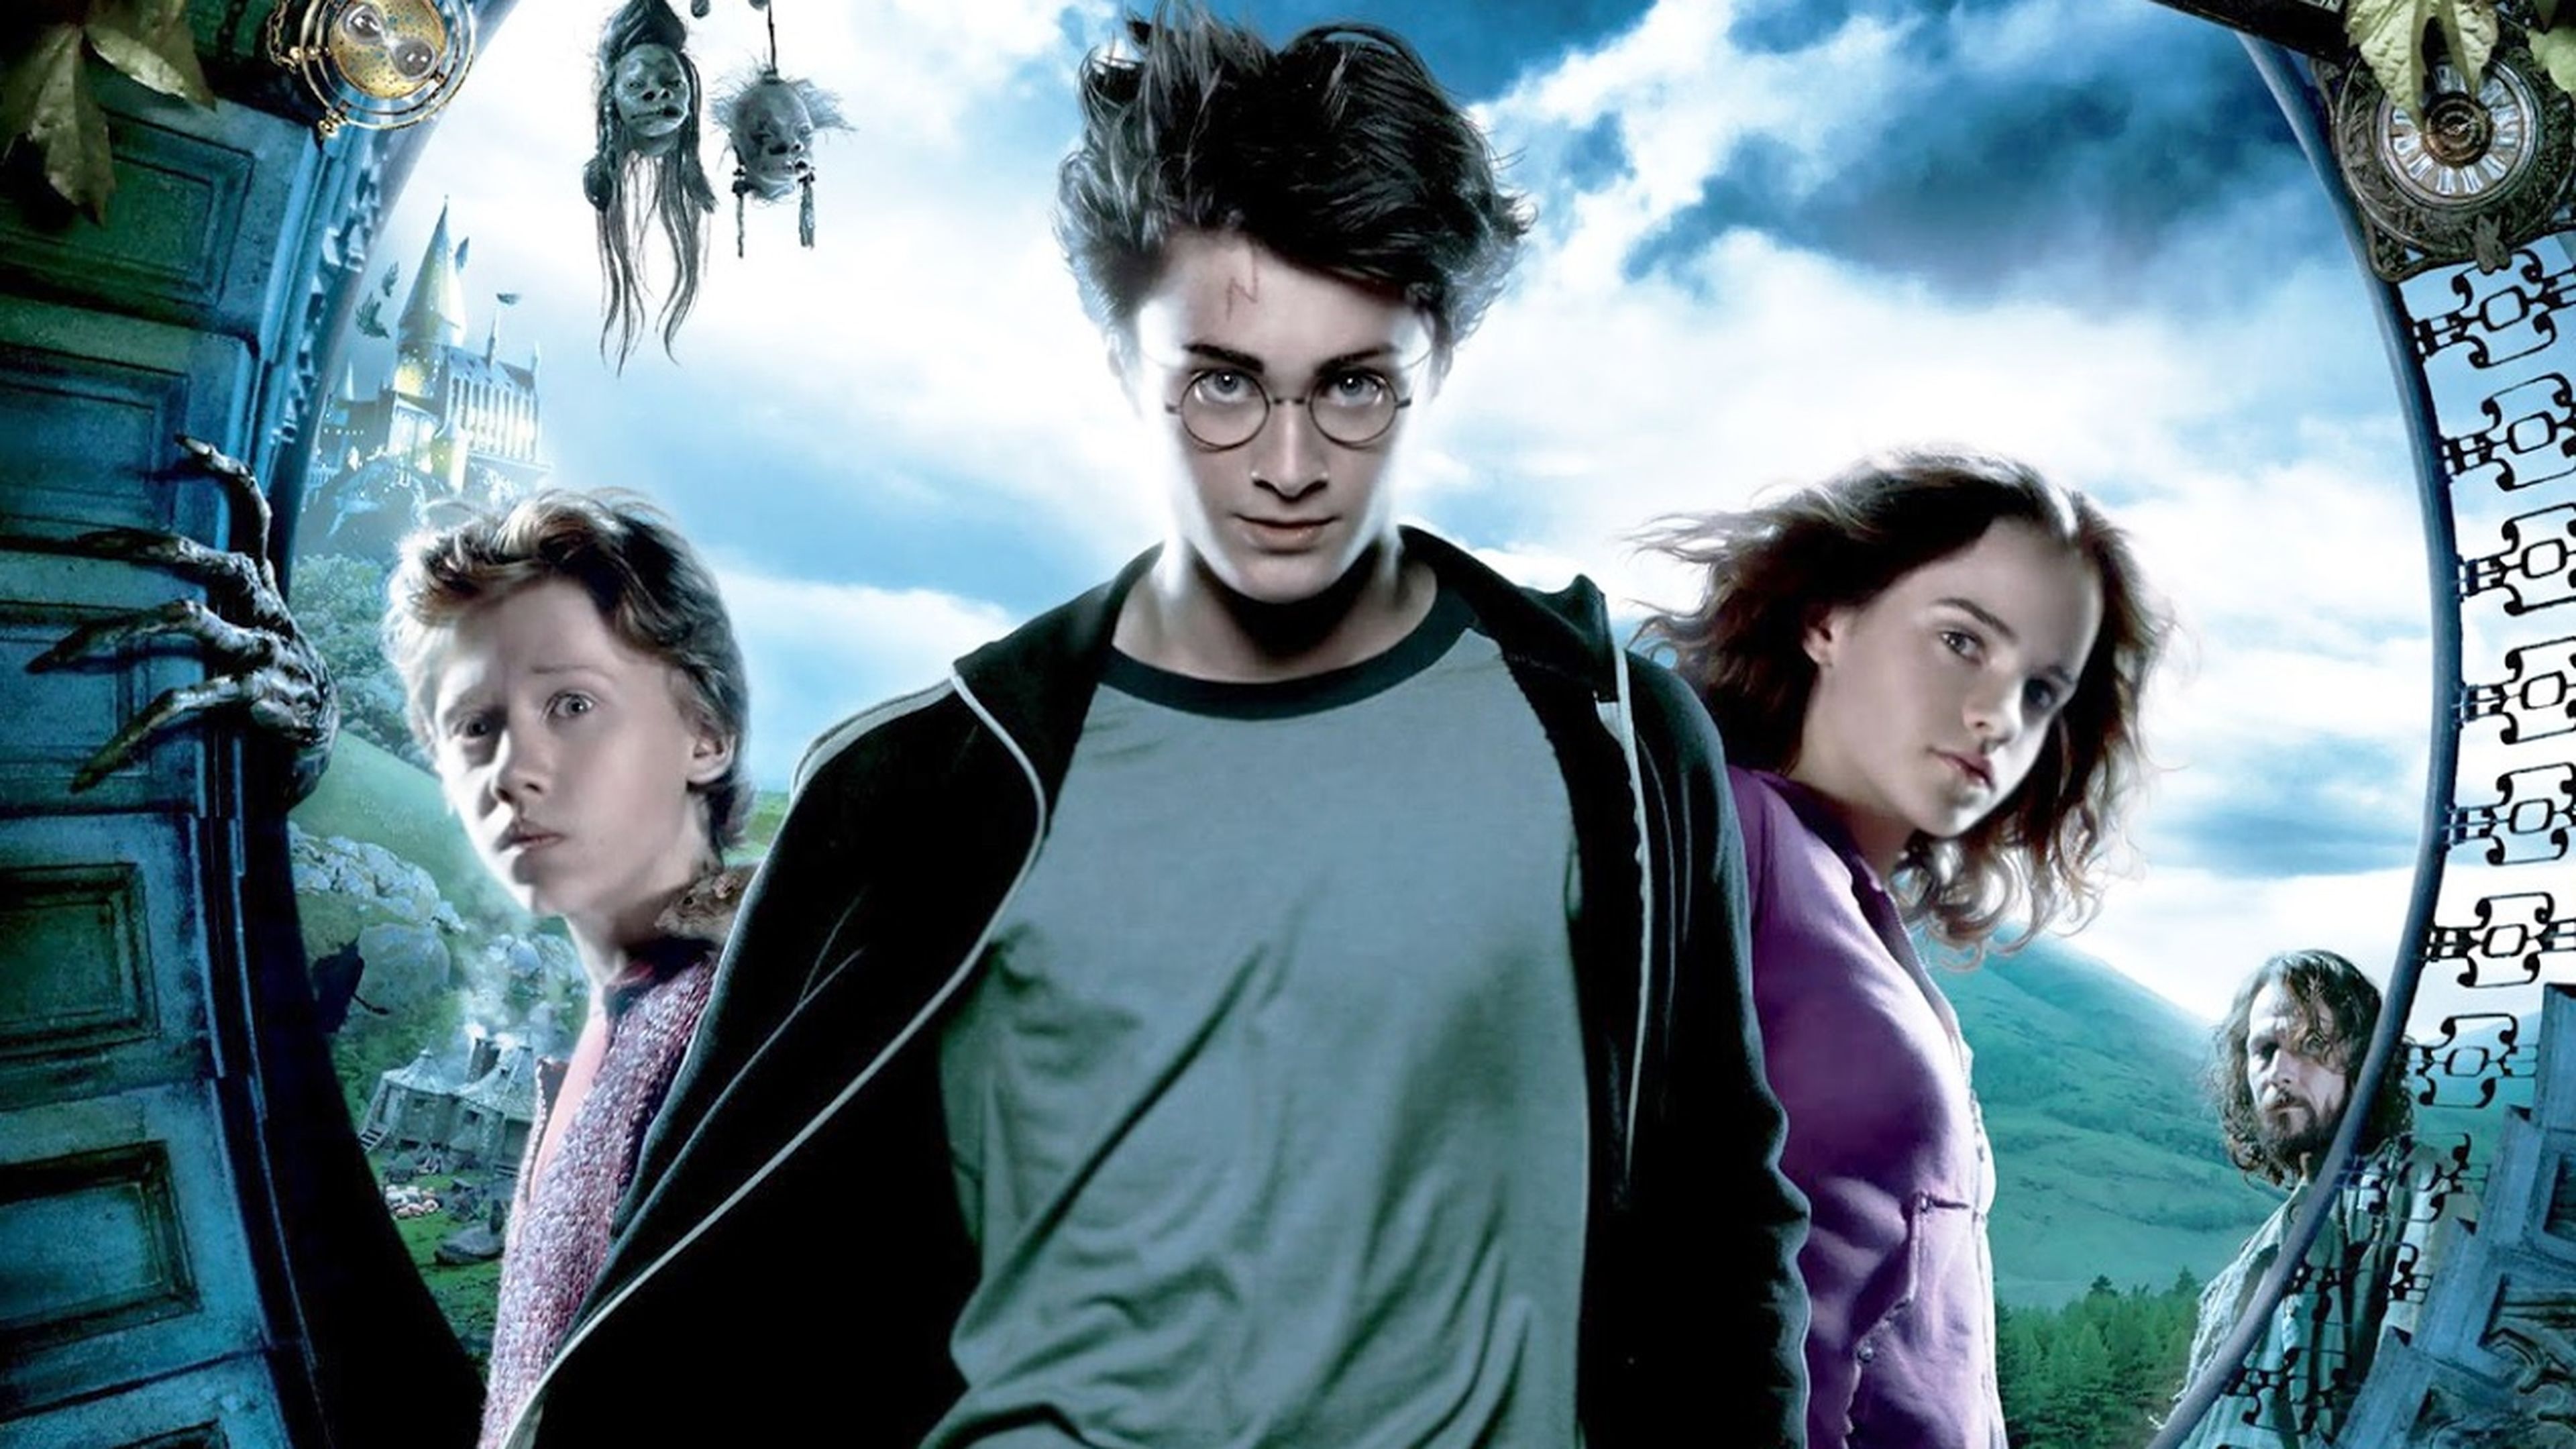 Harry Potter y el prisionero de Azkaban (2004)